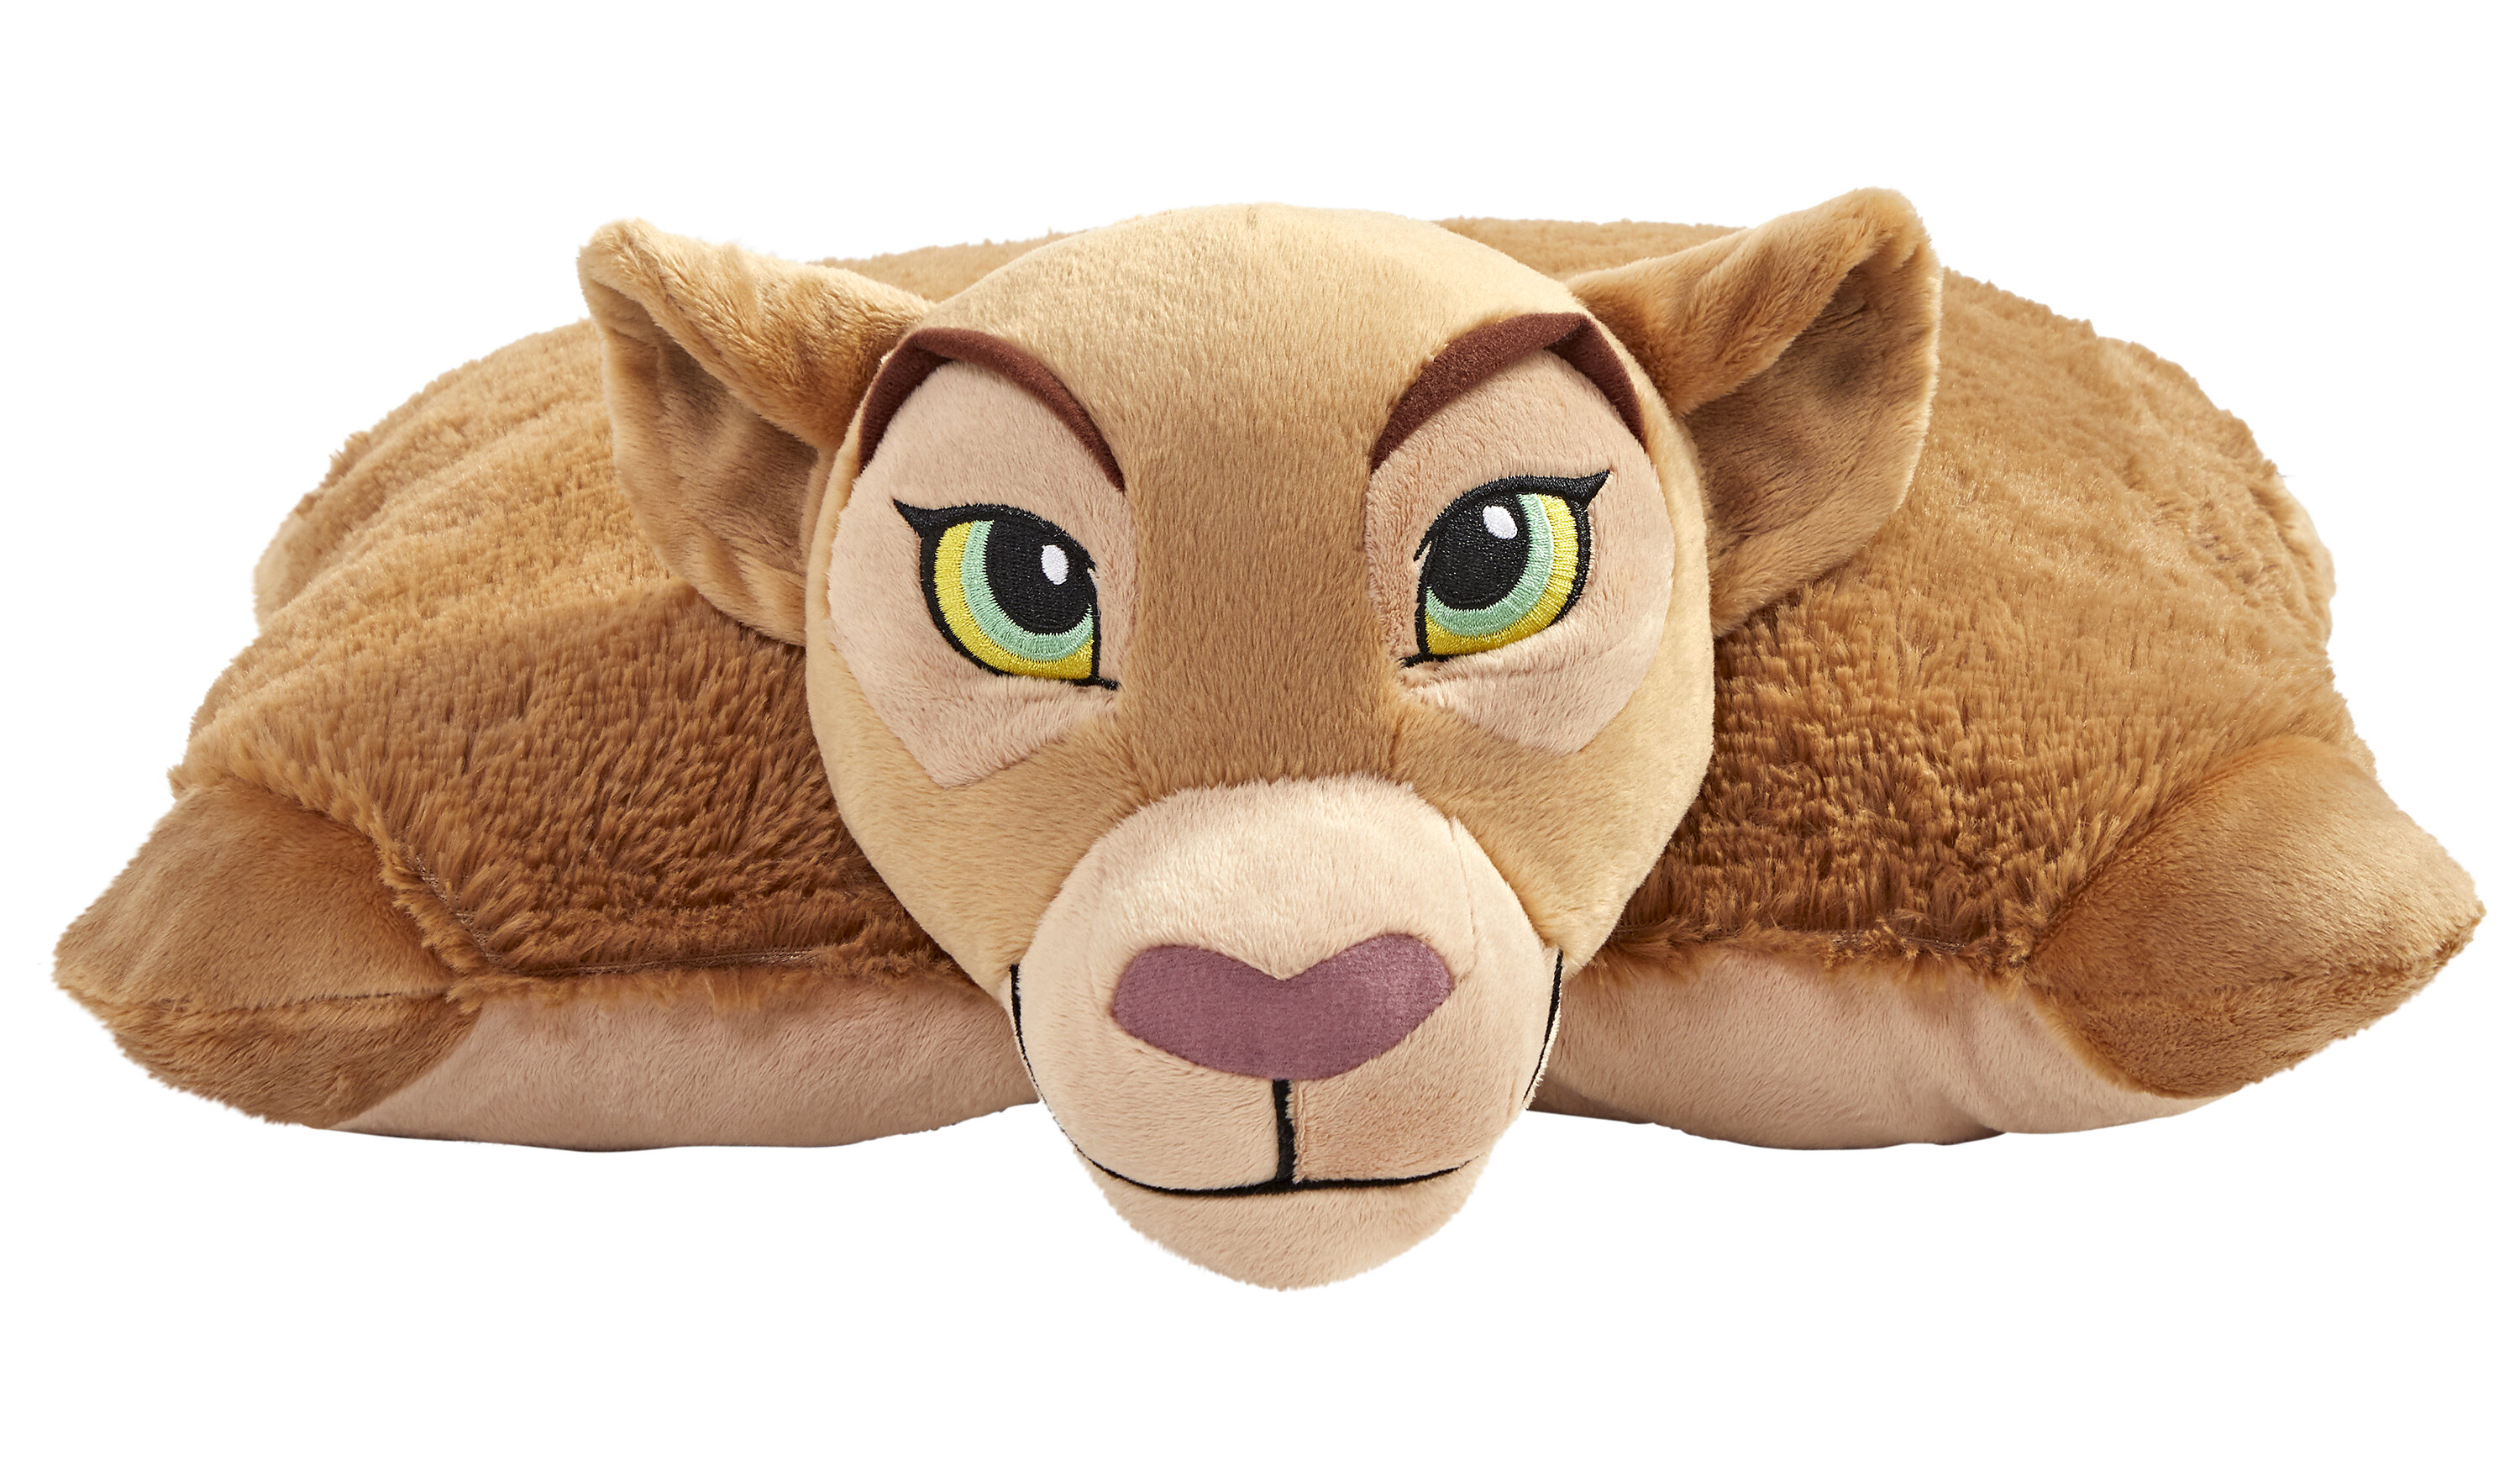 nala lion king stuffed animal